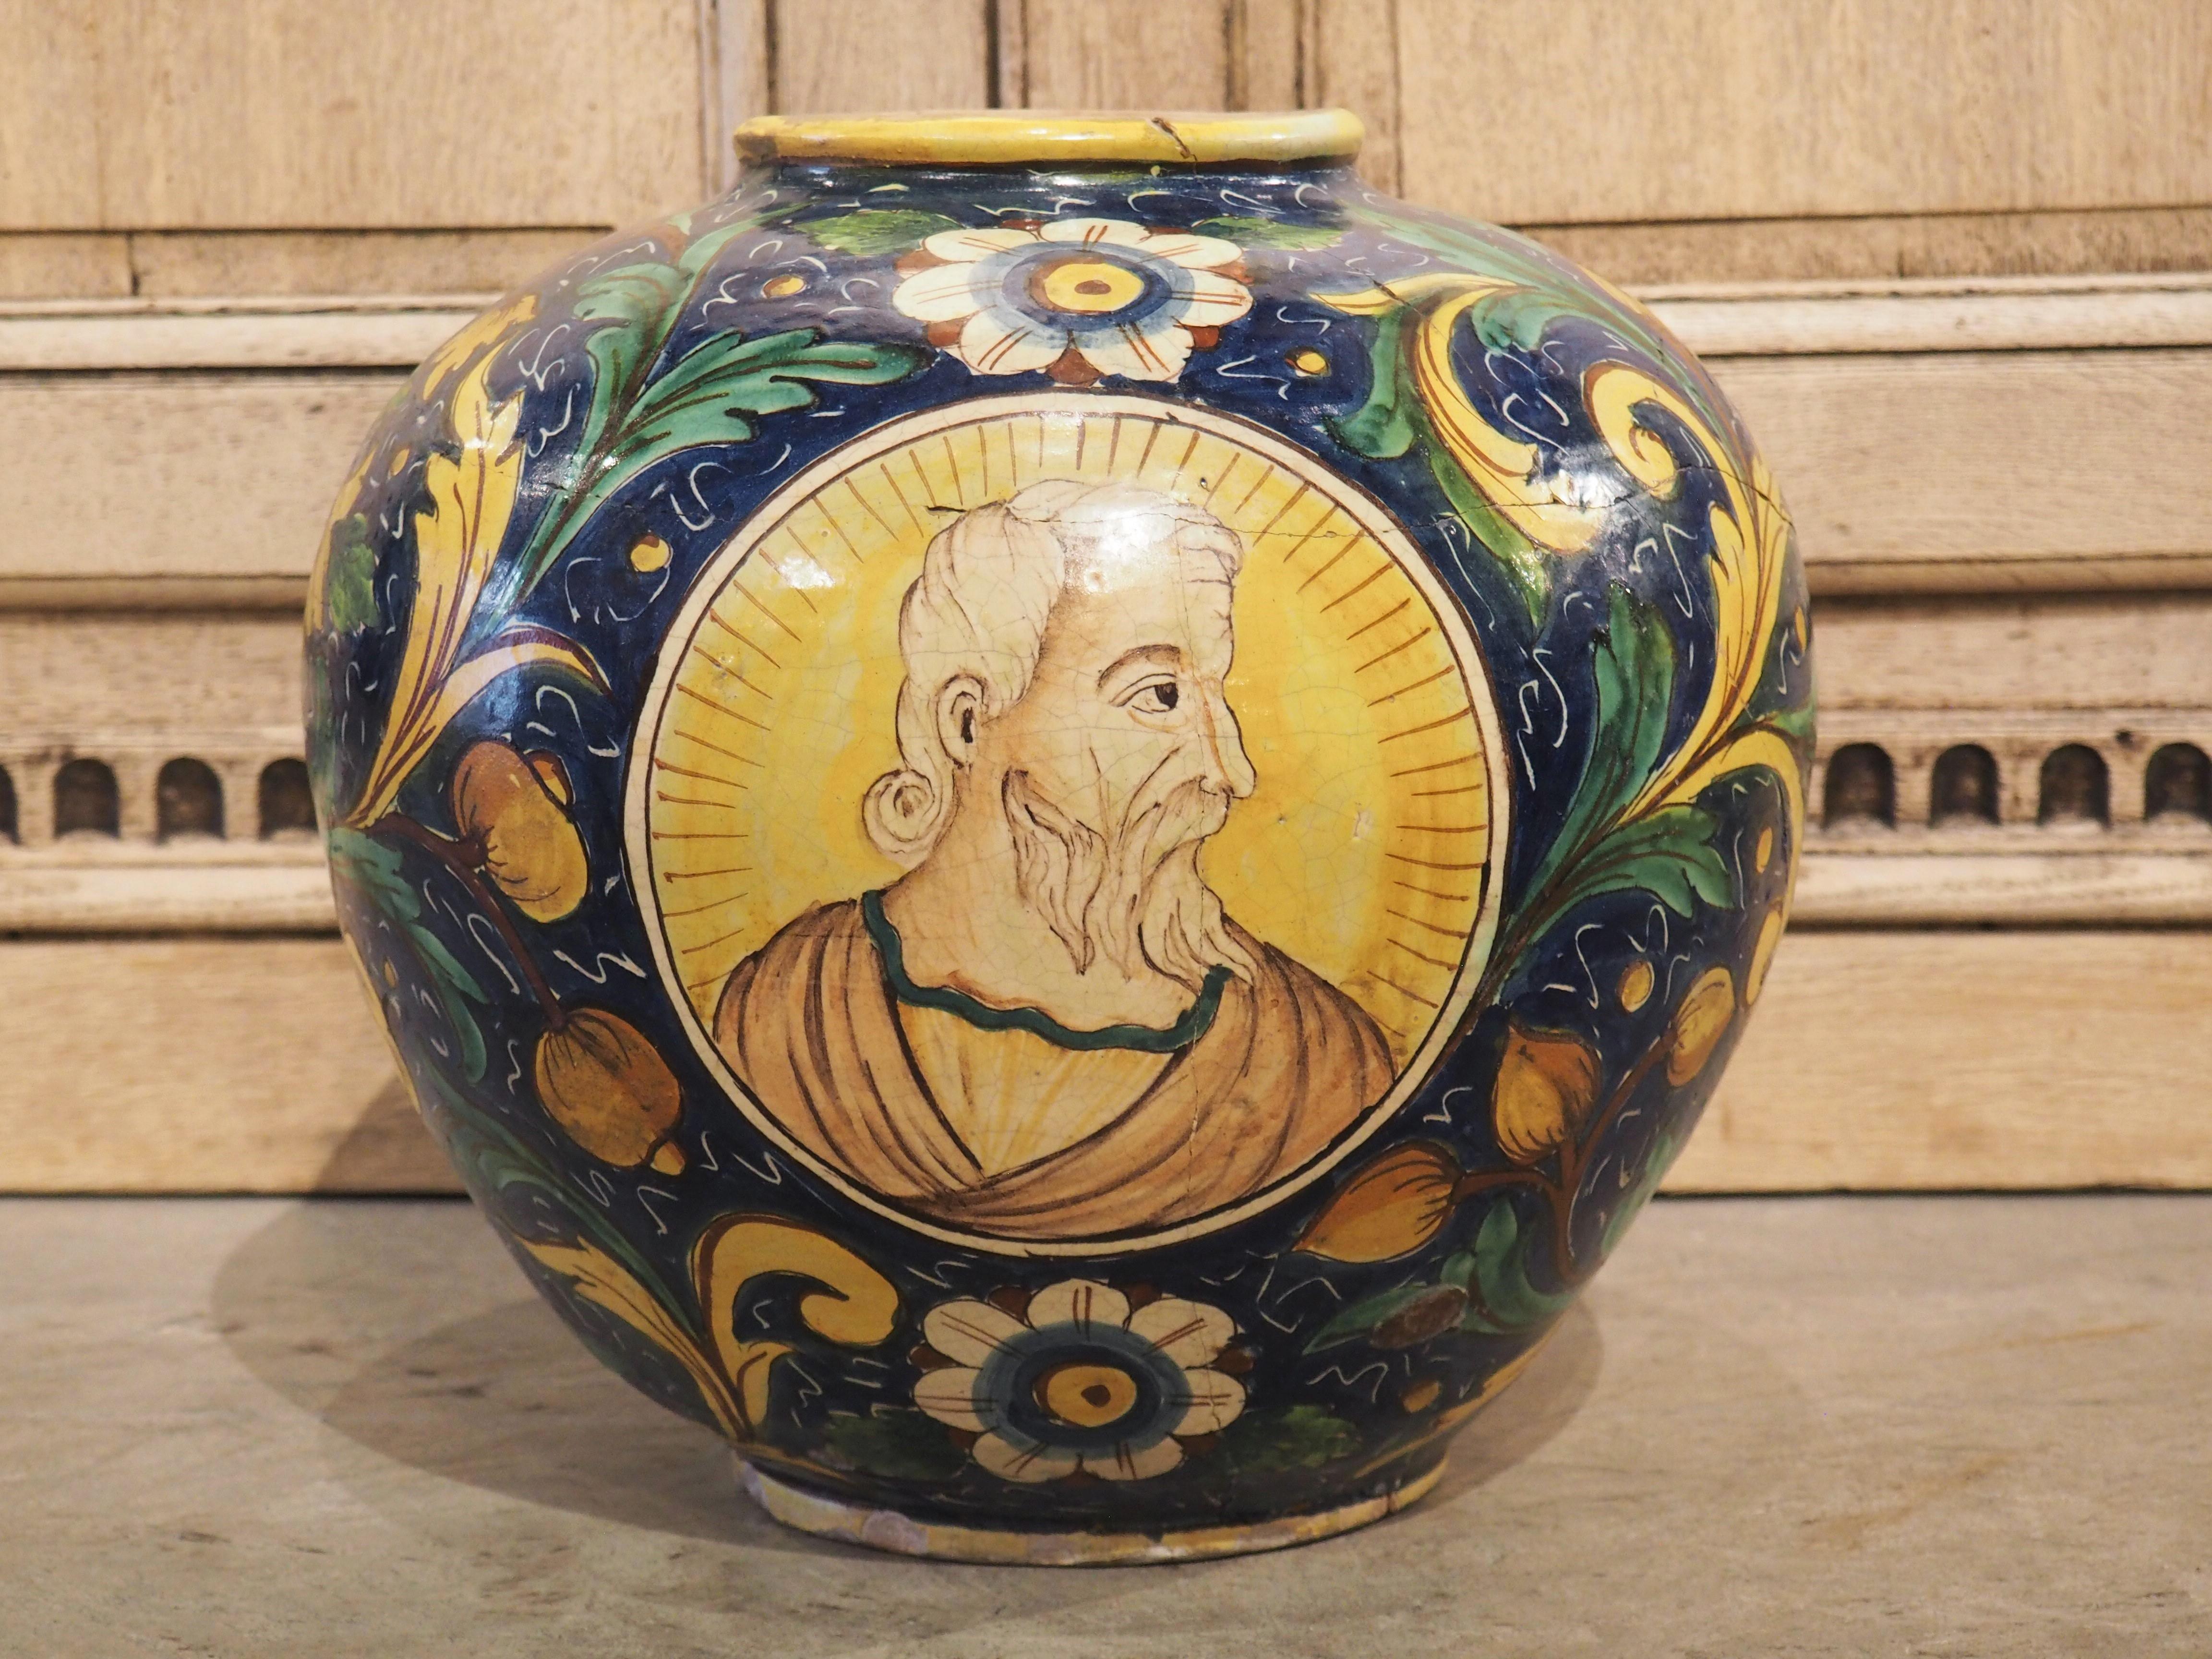 Kräftige Farben, handbemalt im Stil der Renaissance, veredeln diese große Maiolica-Kanne aus den 1800er Jahren. Maiolica ist zinnglasierte Keramik aus Italien, die auf weißem Grund verziert wurde. Diese Kanne gilt als Istoriato, was bedeutet, dass